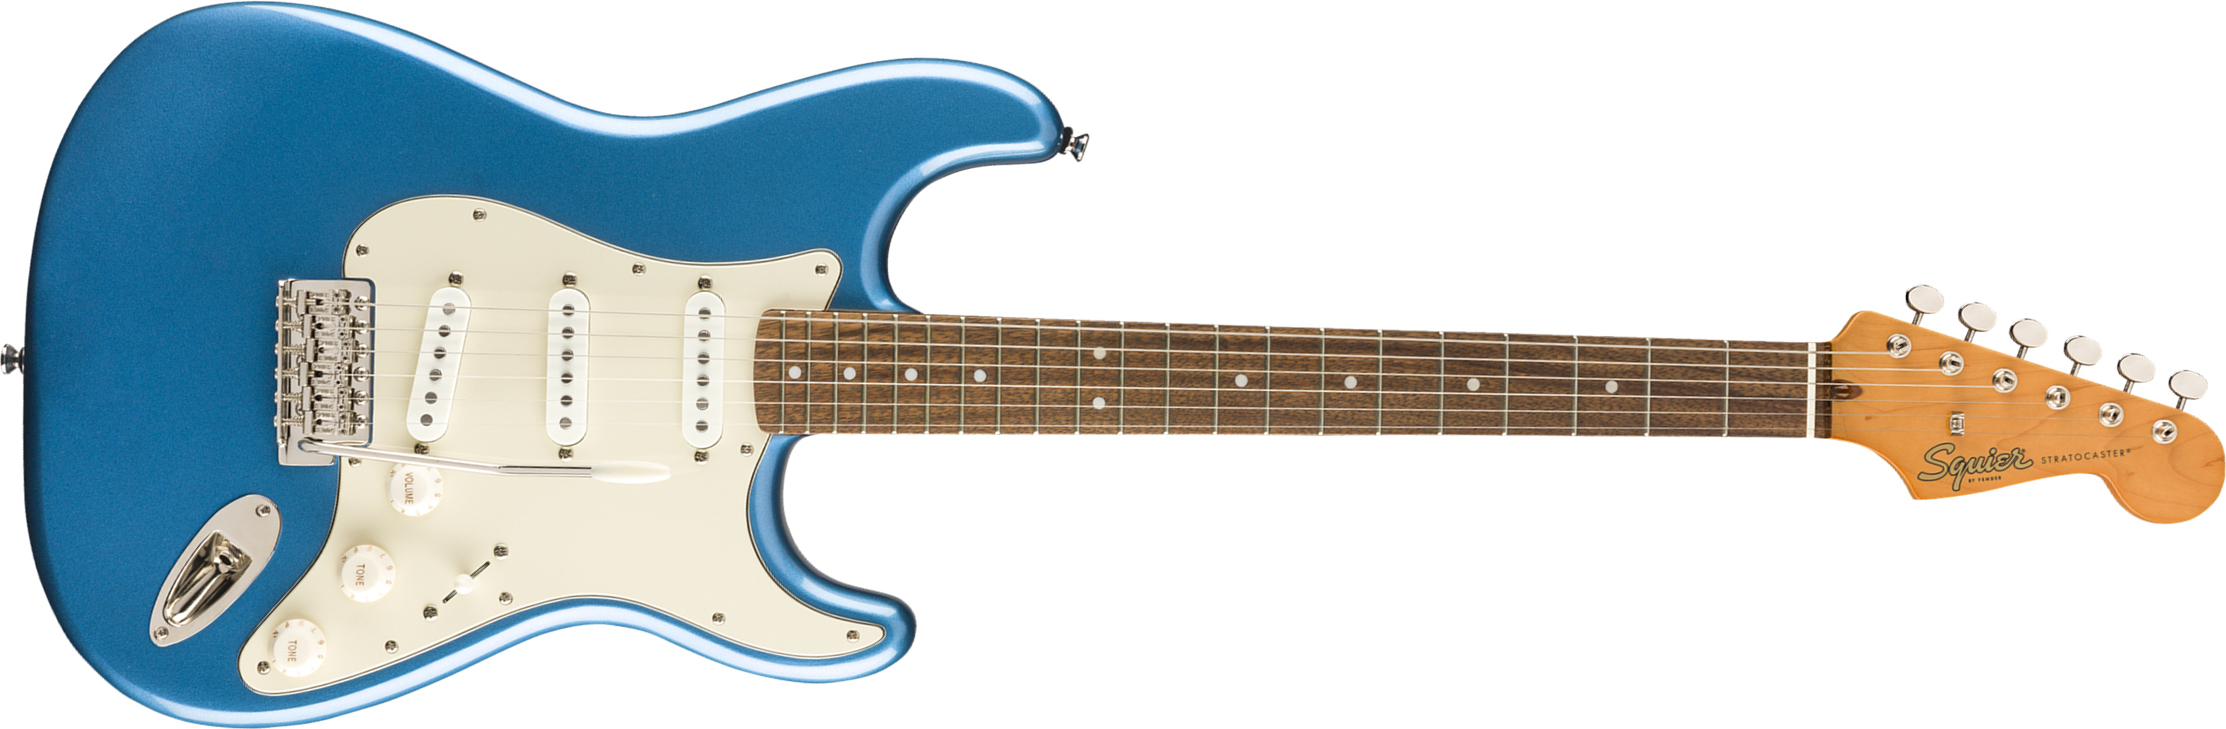 Squier Strat '60s Classic Vibe 2019 Lau 2019 - Lake Placid Blue - Str shape electric guitar - Main picture